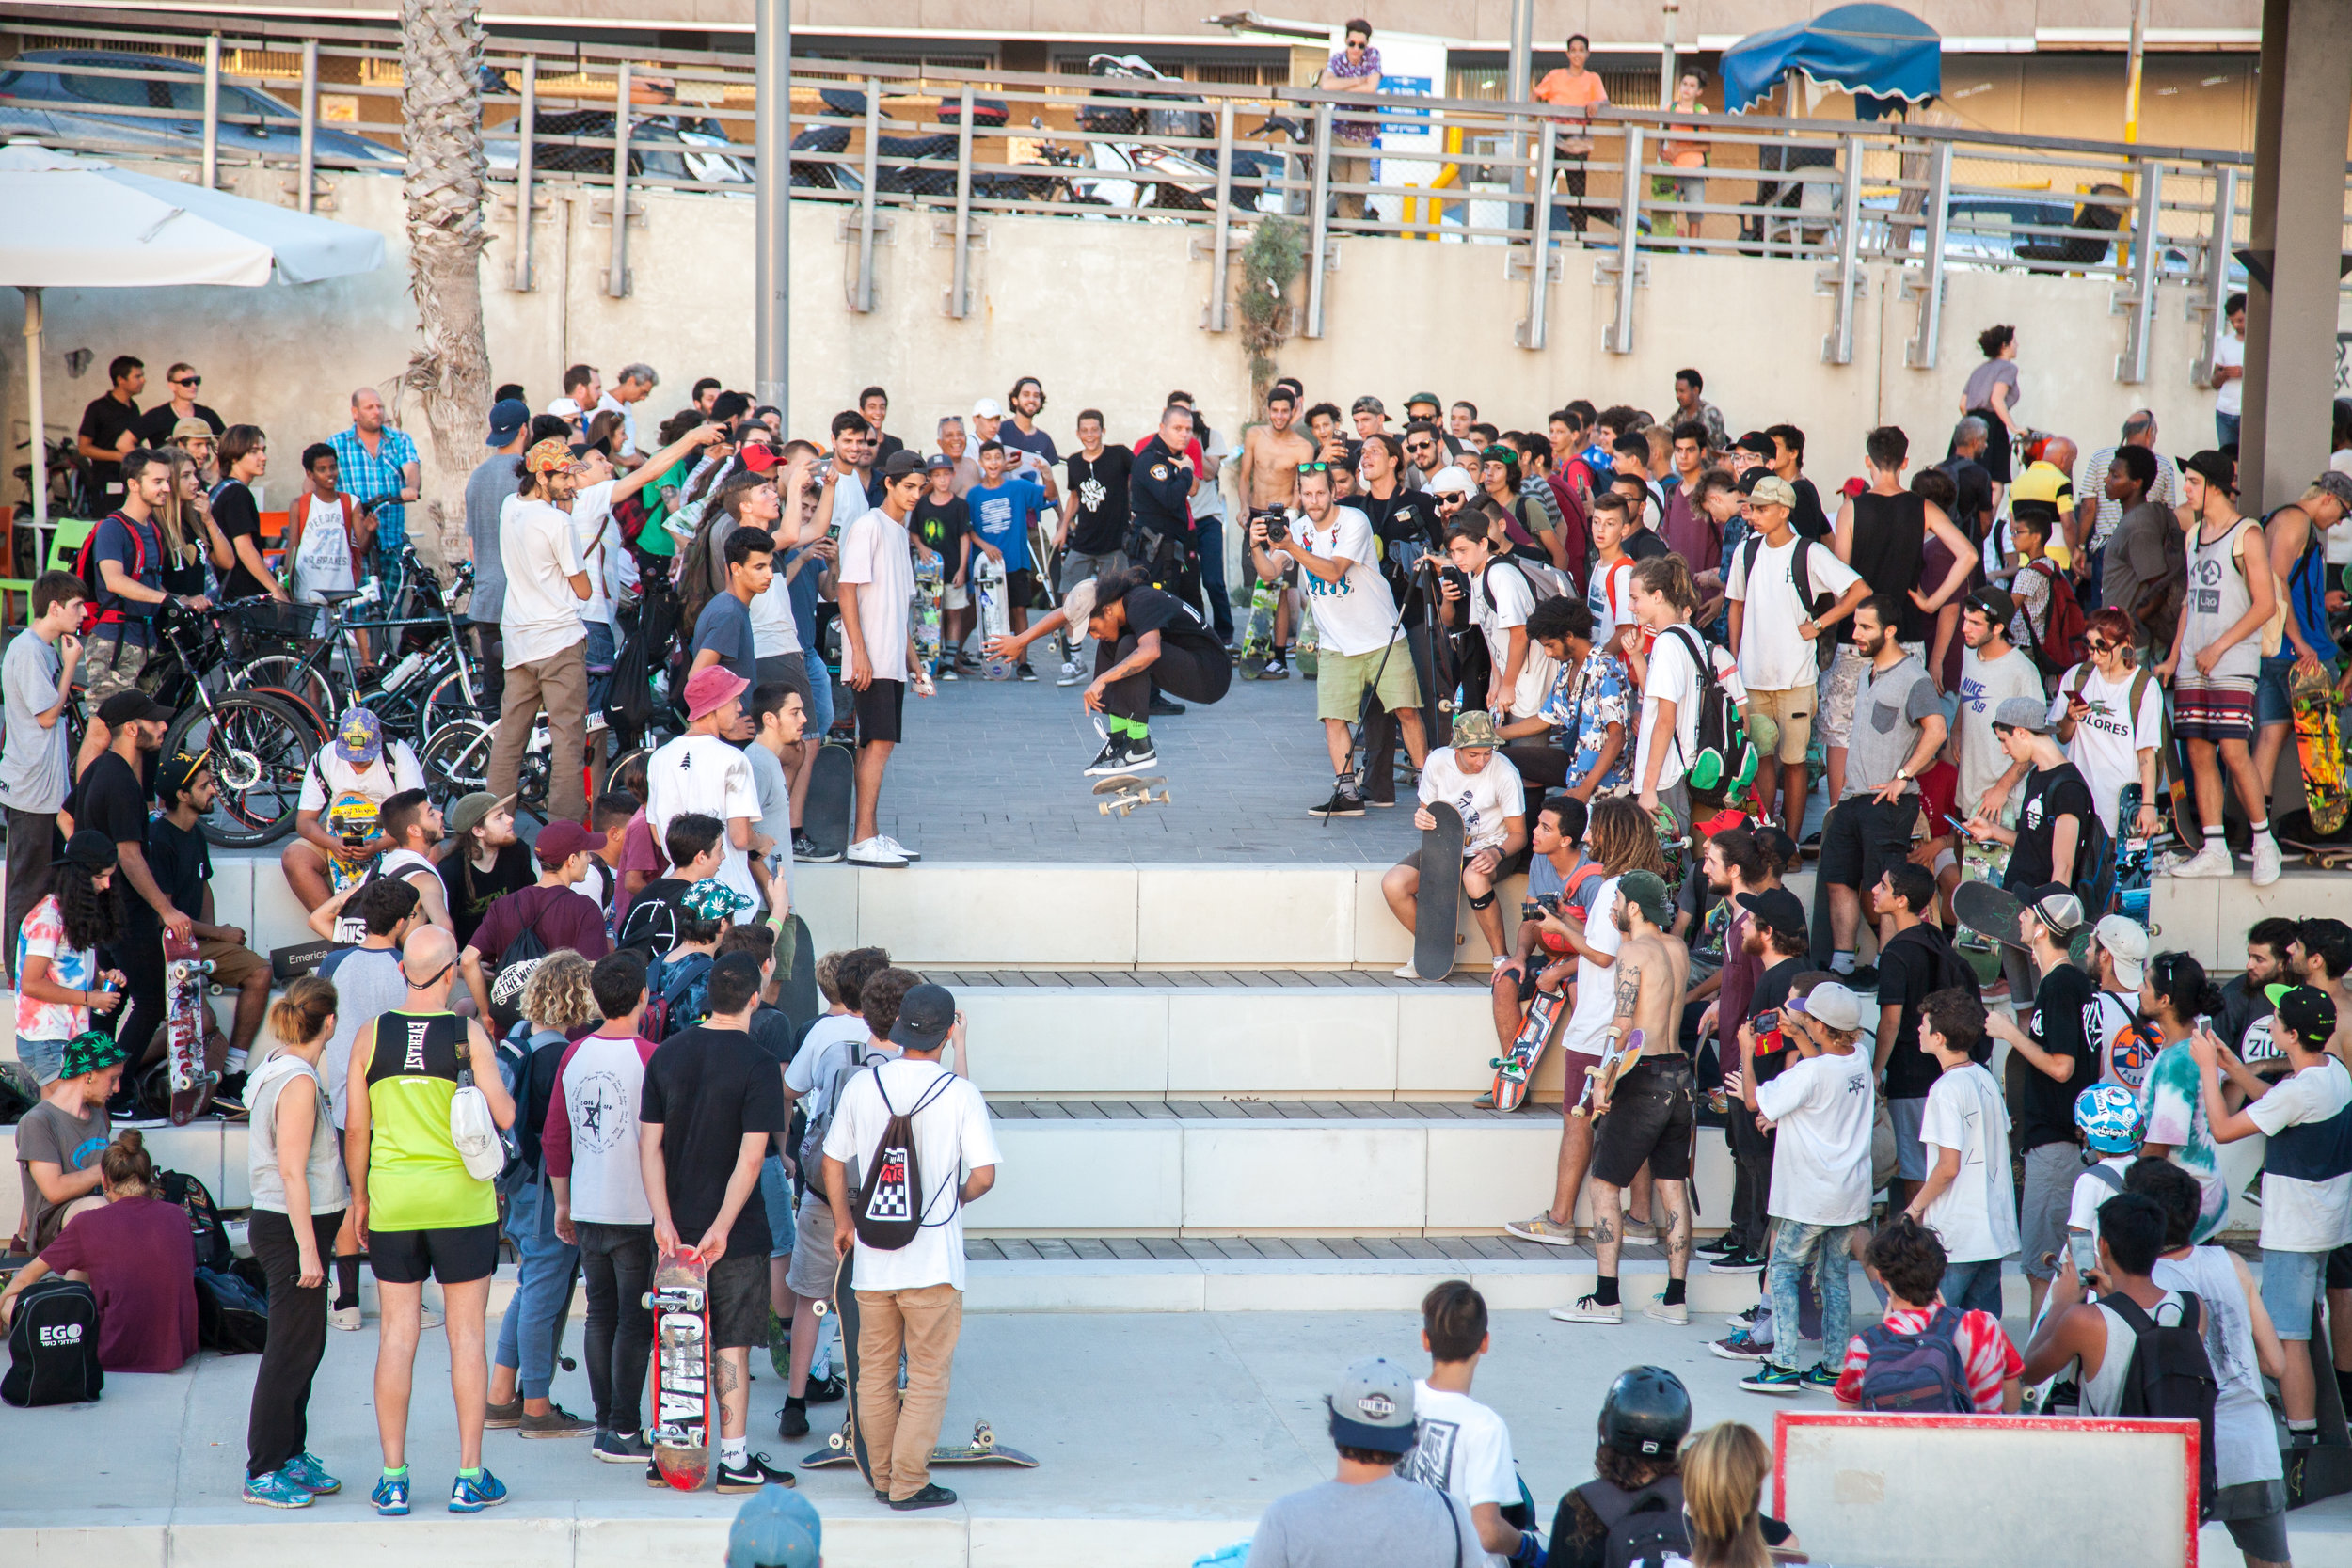 Erwin Jadraque - front side popshuvit "Go skateboarding day", Tel Aviv beach